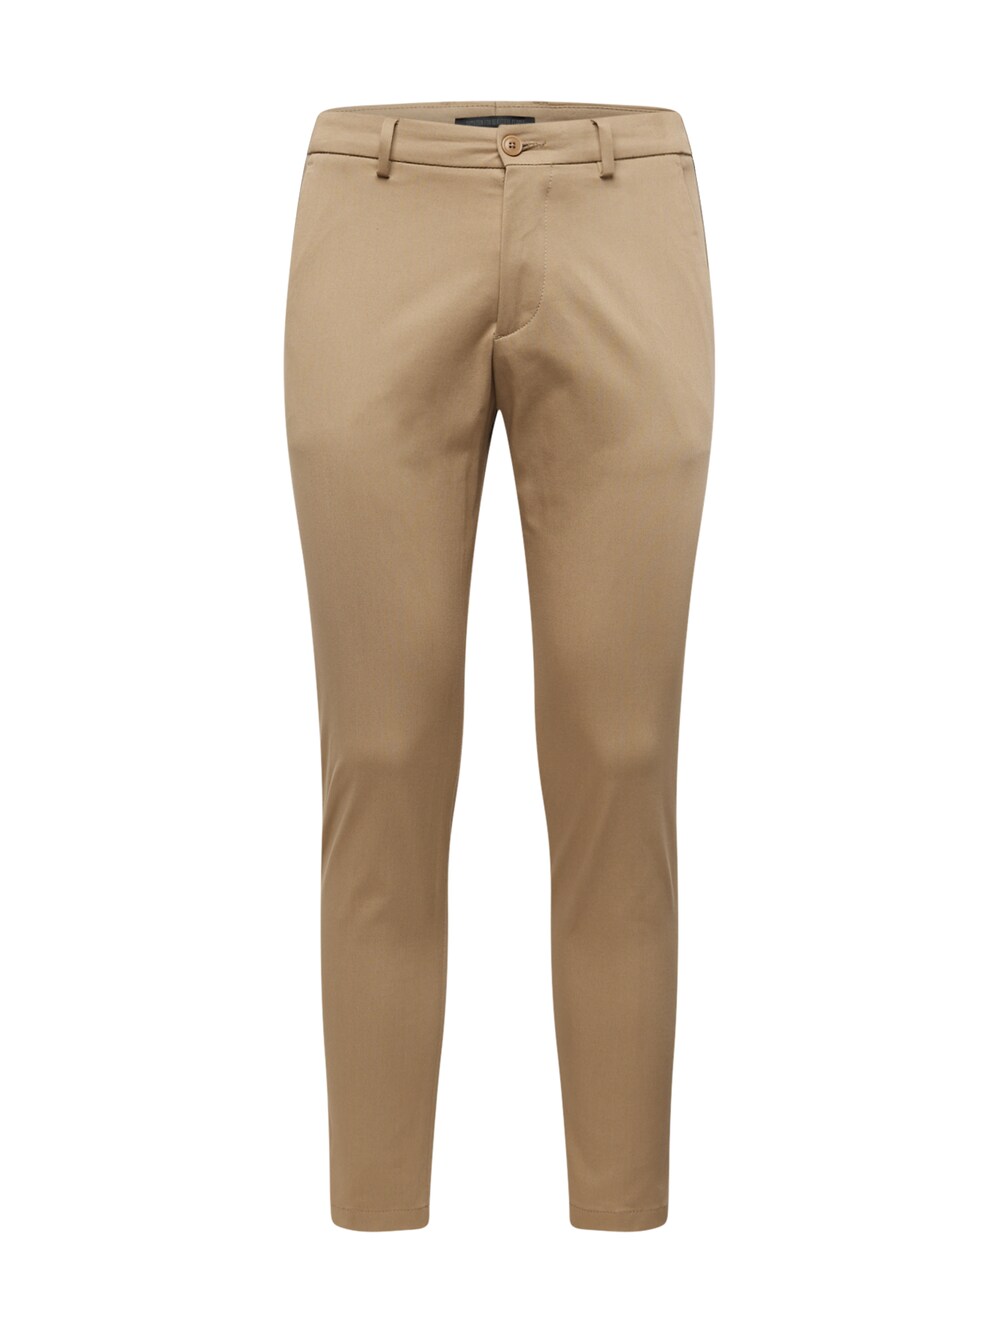 Зауженные брюки-чиносы Drykorn AJEND, светло-коричневый костюмные брюки ajend drykorn серо коричневый